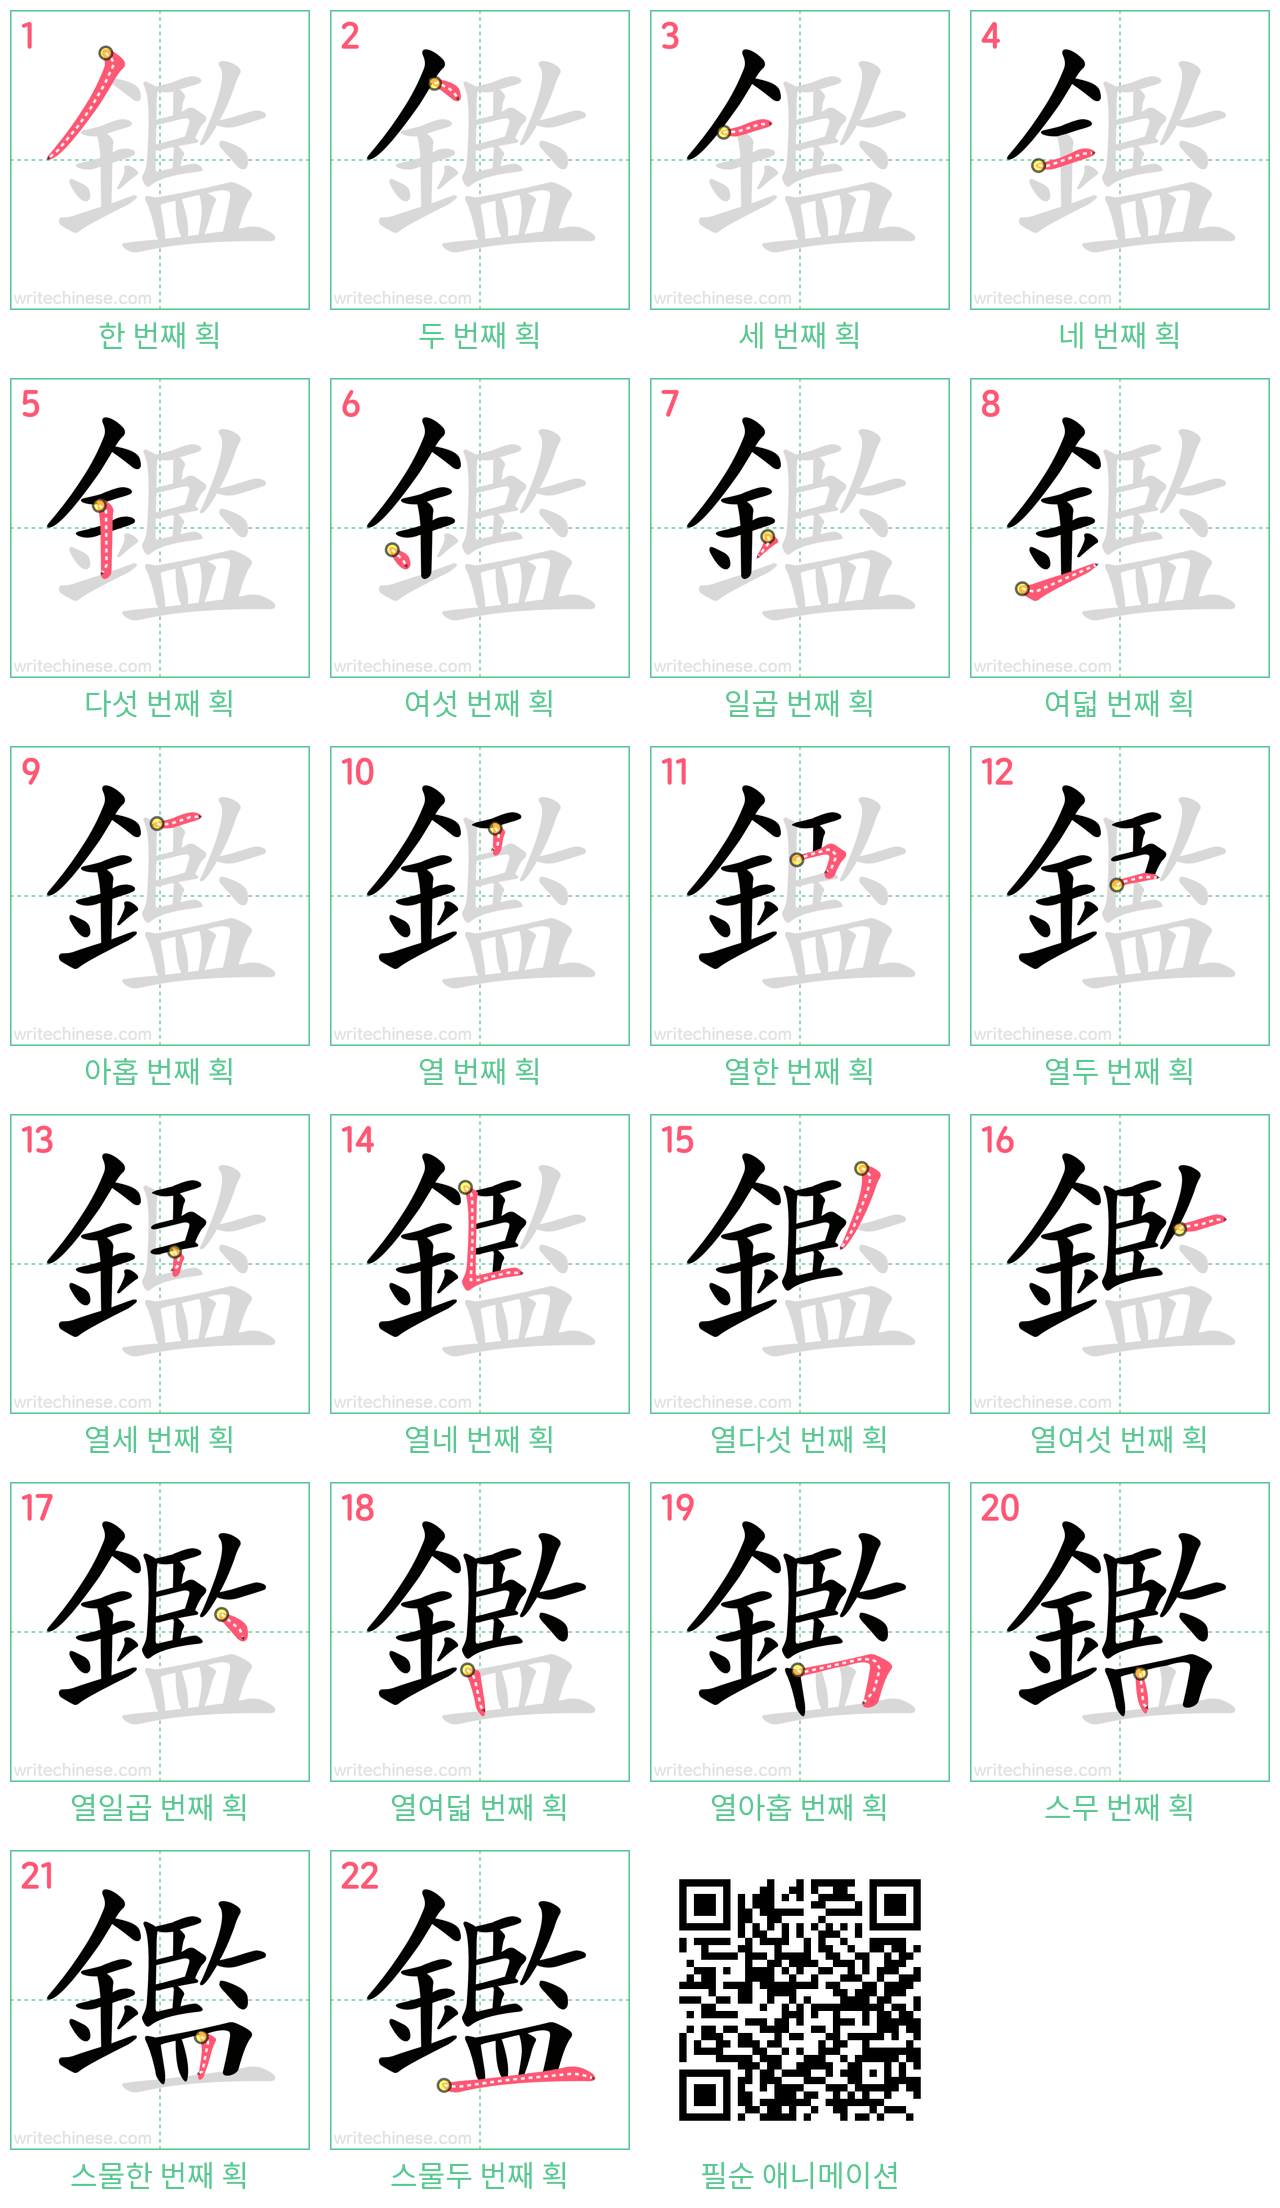 鑑 step-by-step stroke order diagrams